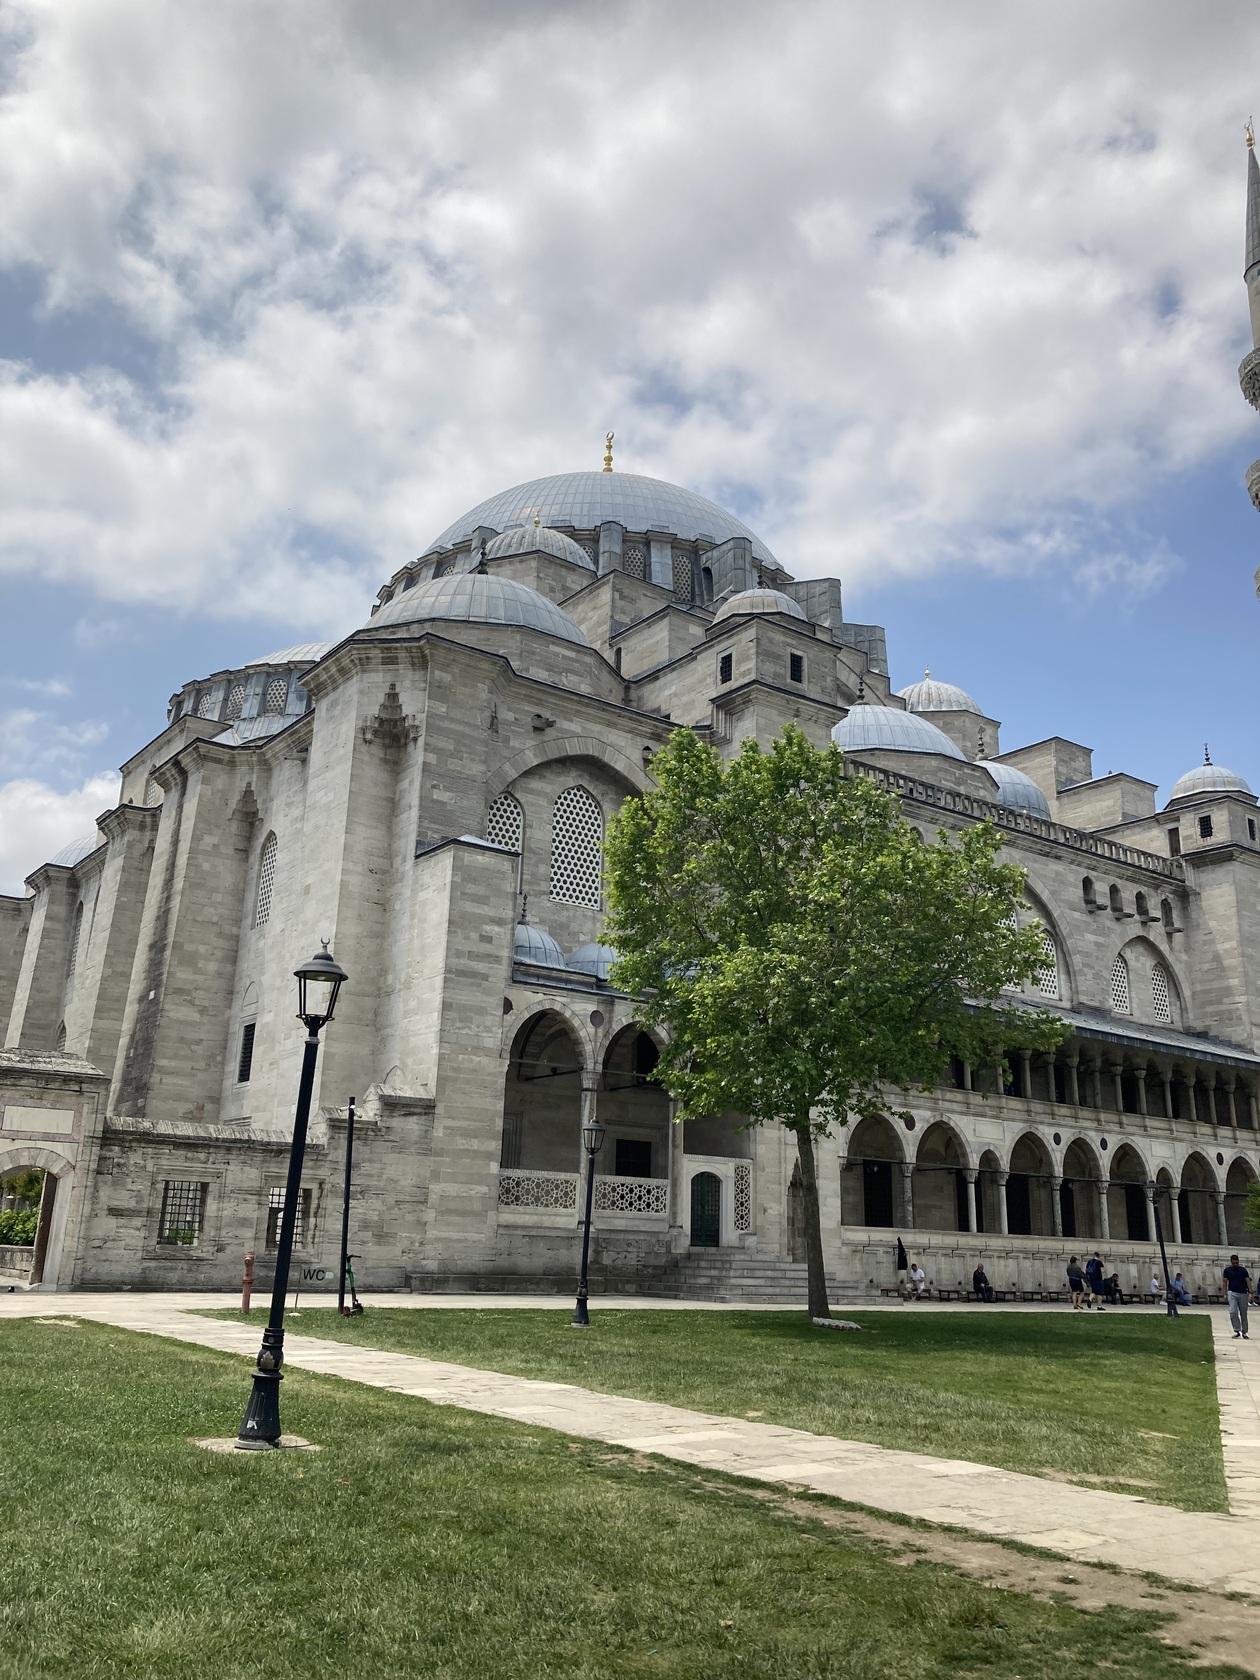 スレイマニエ・モスク | イスタンブール在住メメットさんのおすすめ観光スポット